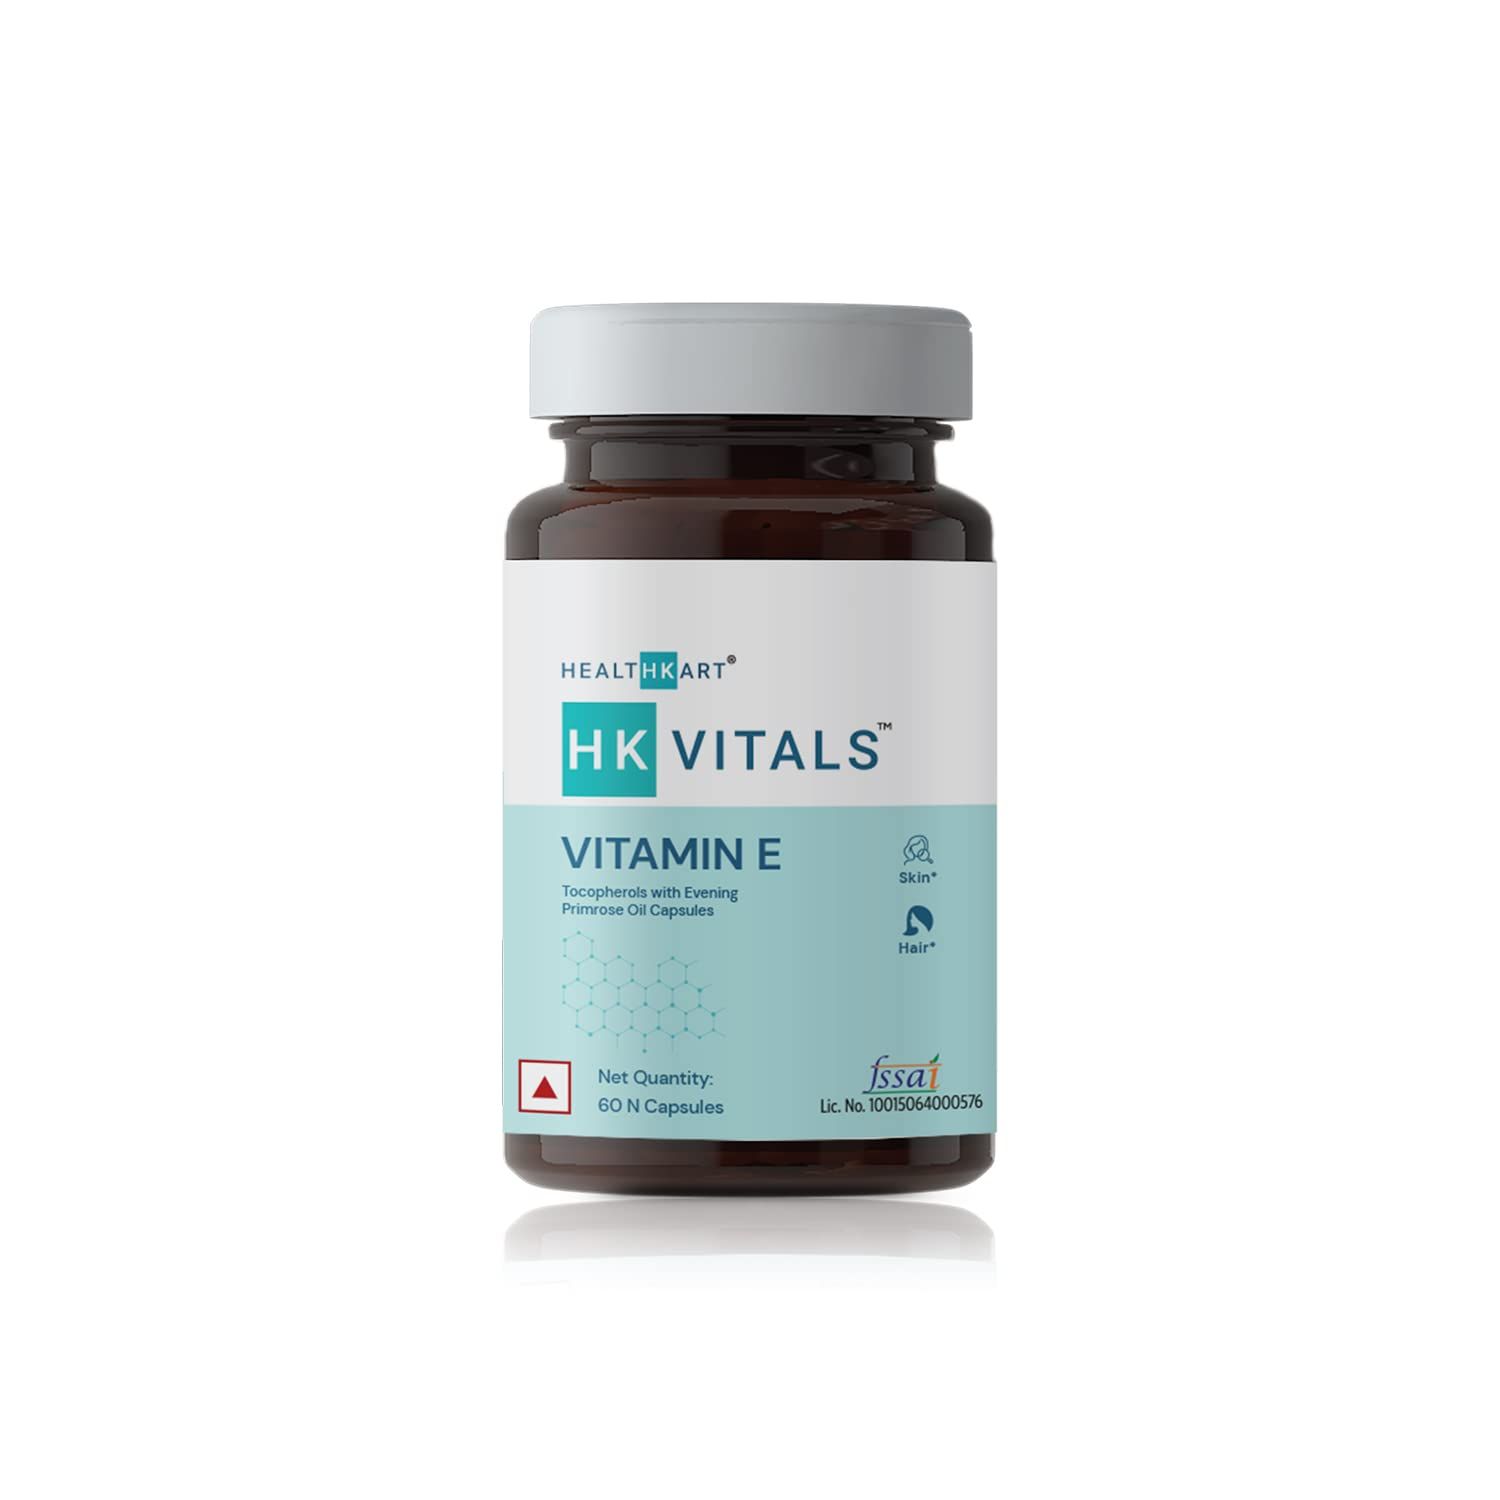 HK Vitals Vitamin E Image